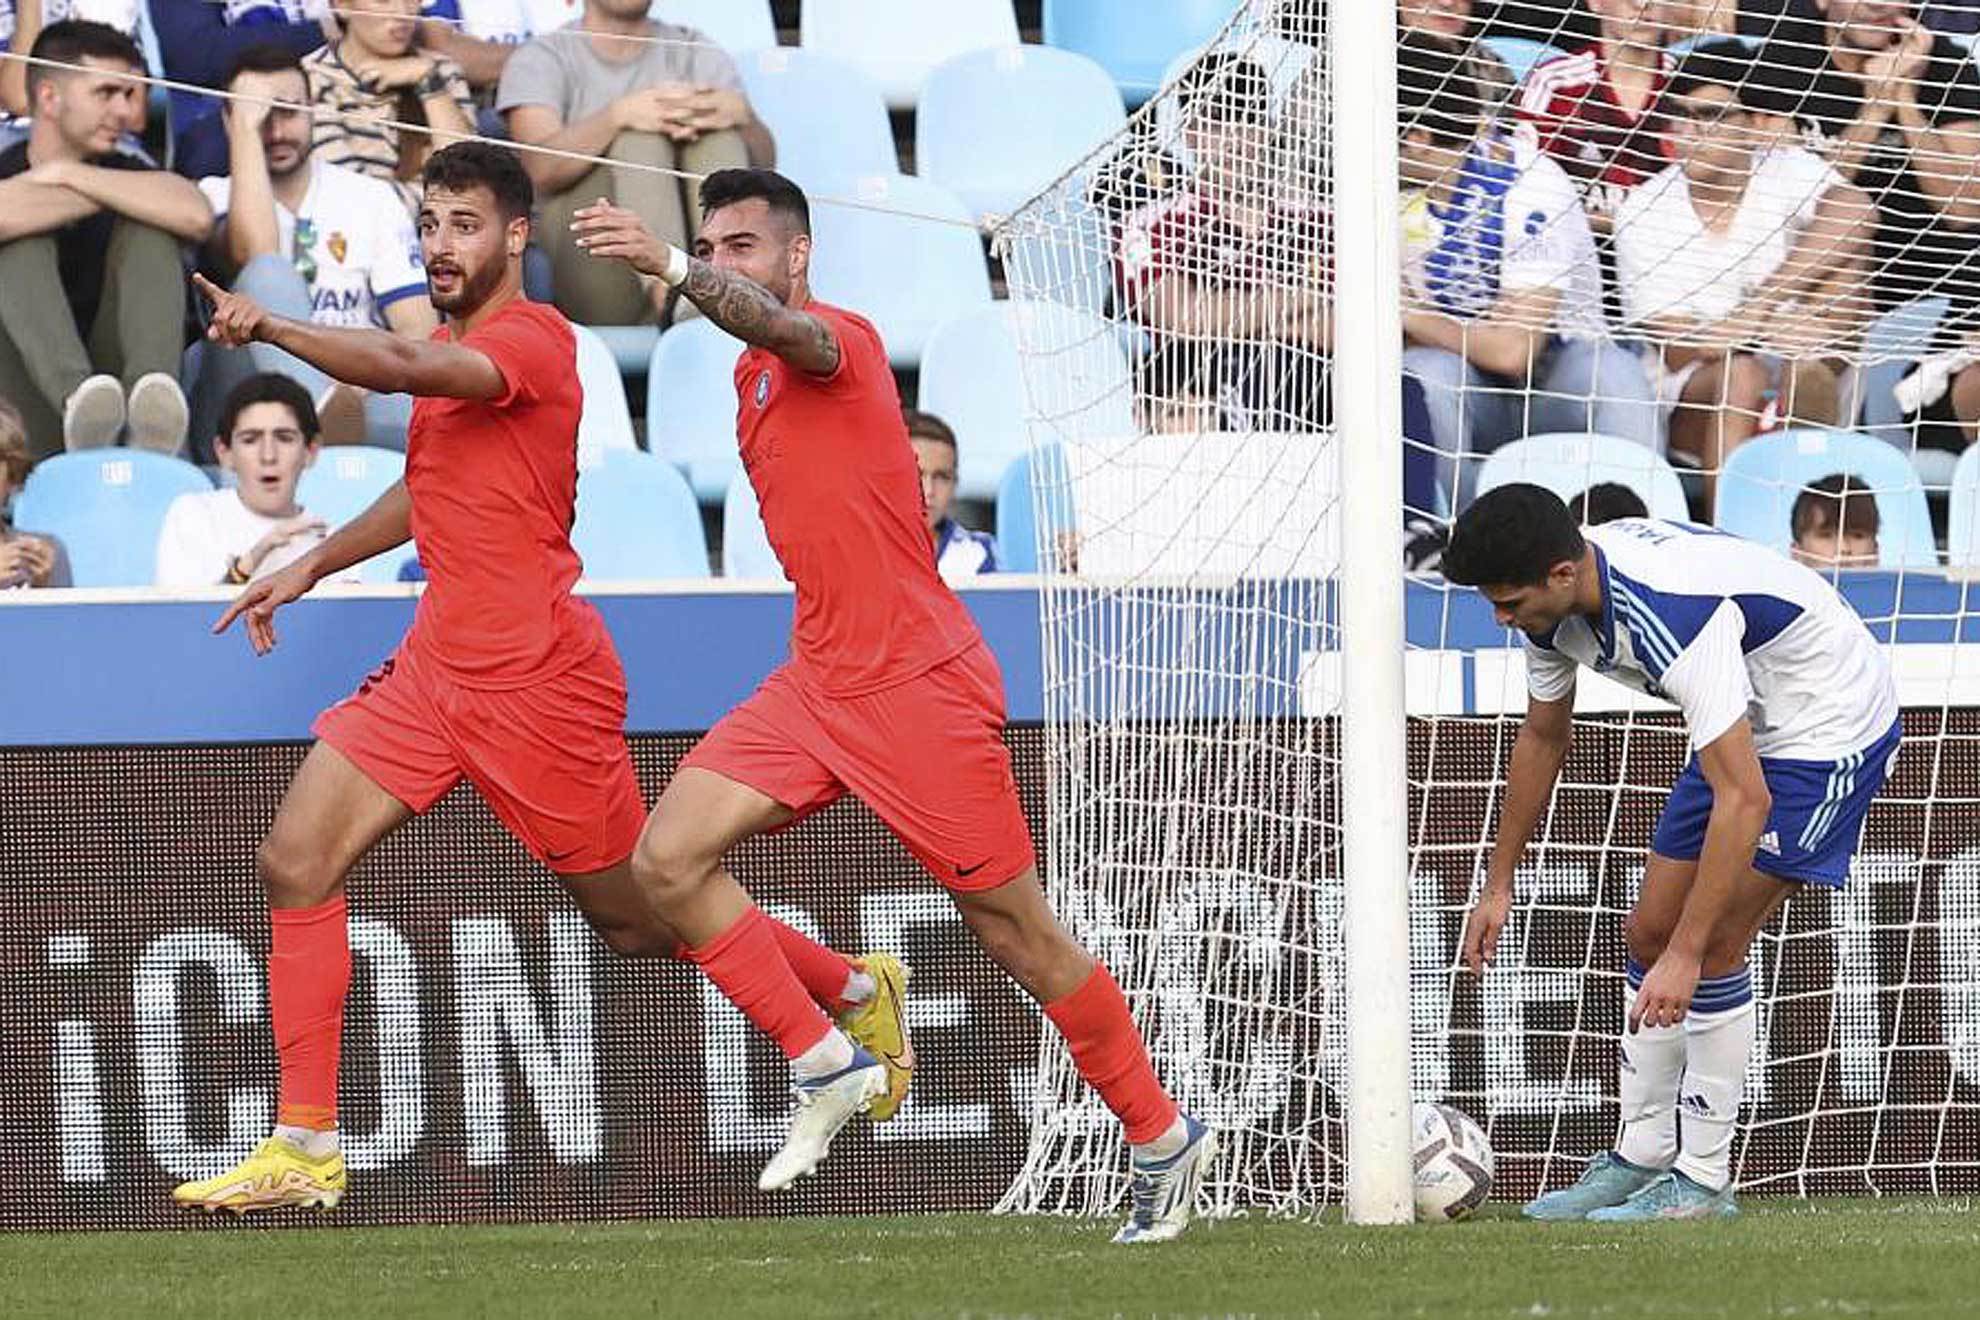 Bakis celebra el gol del Andorra mientras Grau recoge el balón de la p ortería